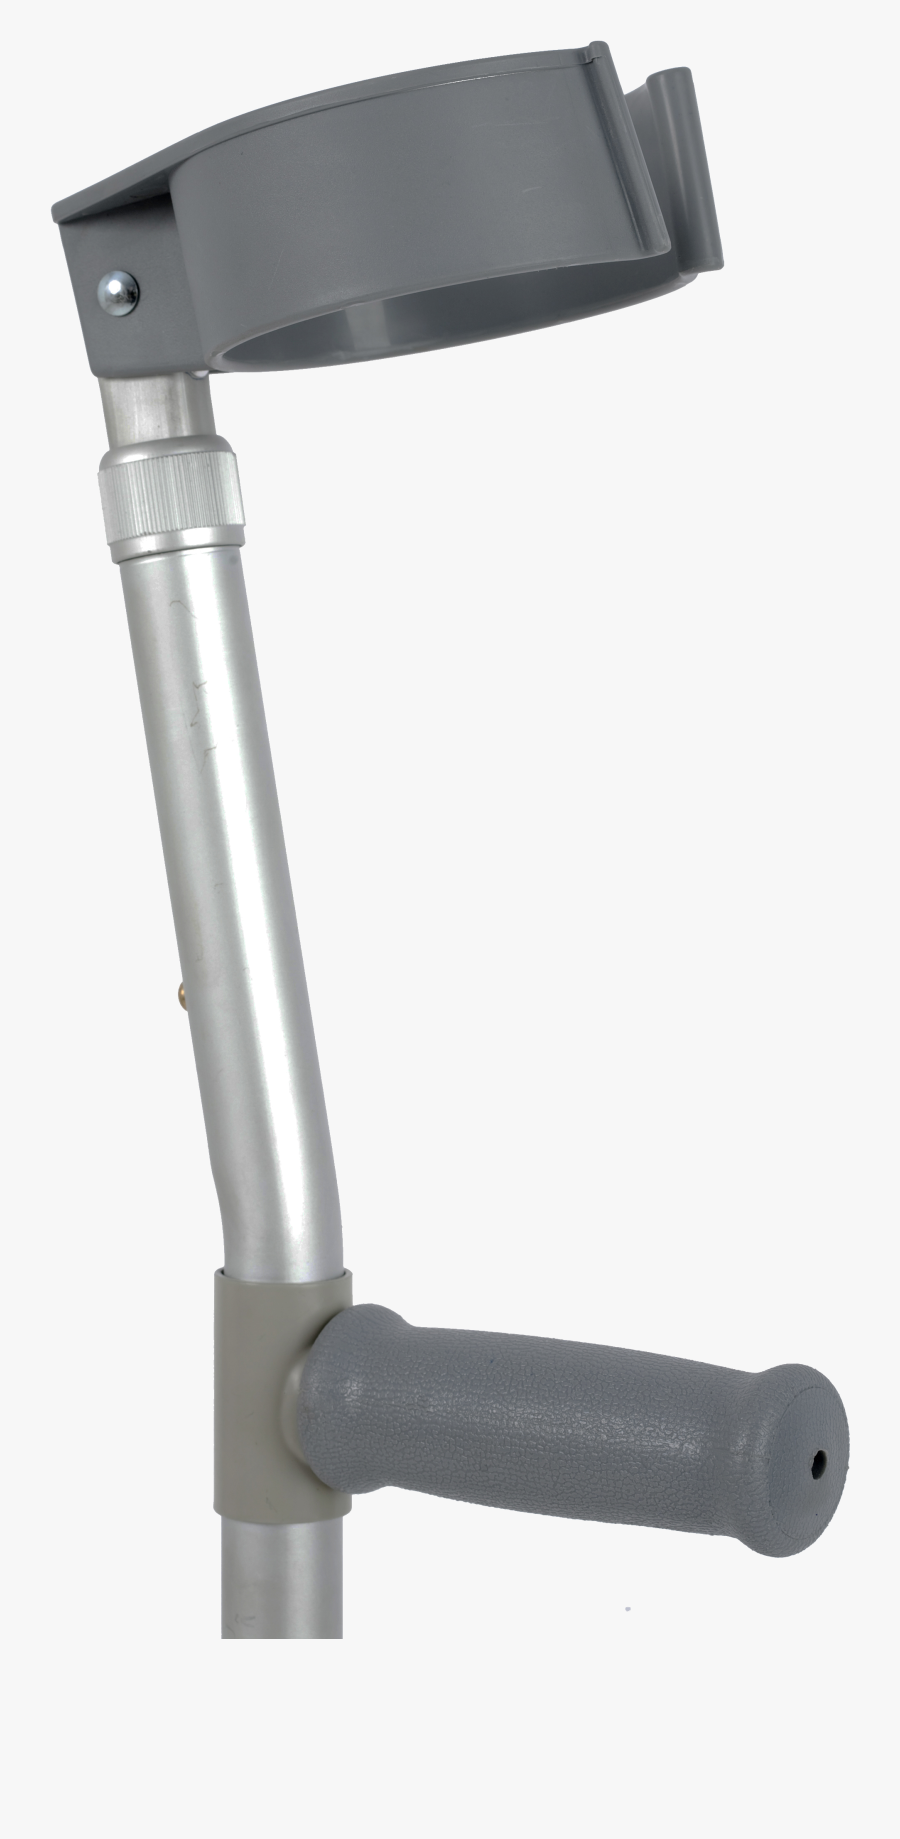 Crutches Png - Tomahawk, Transparent Clipart